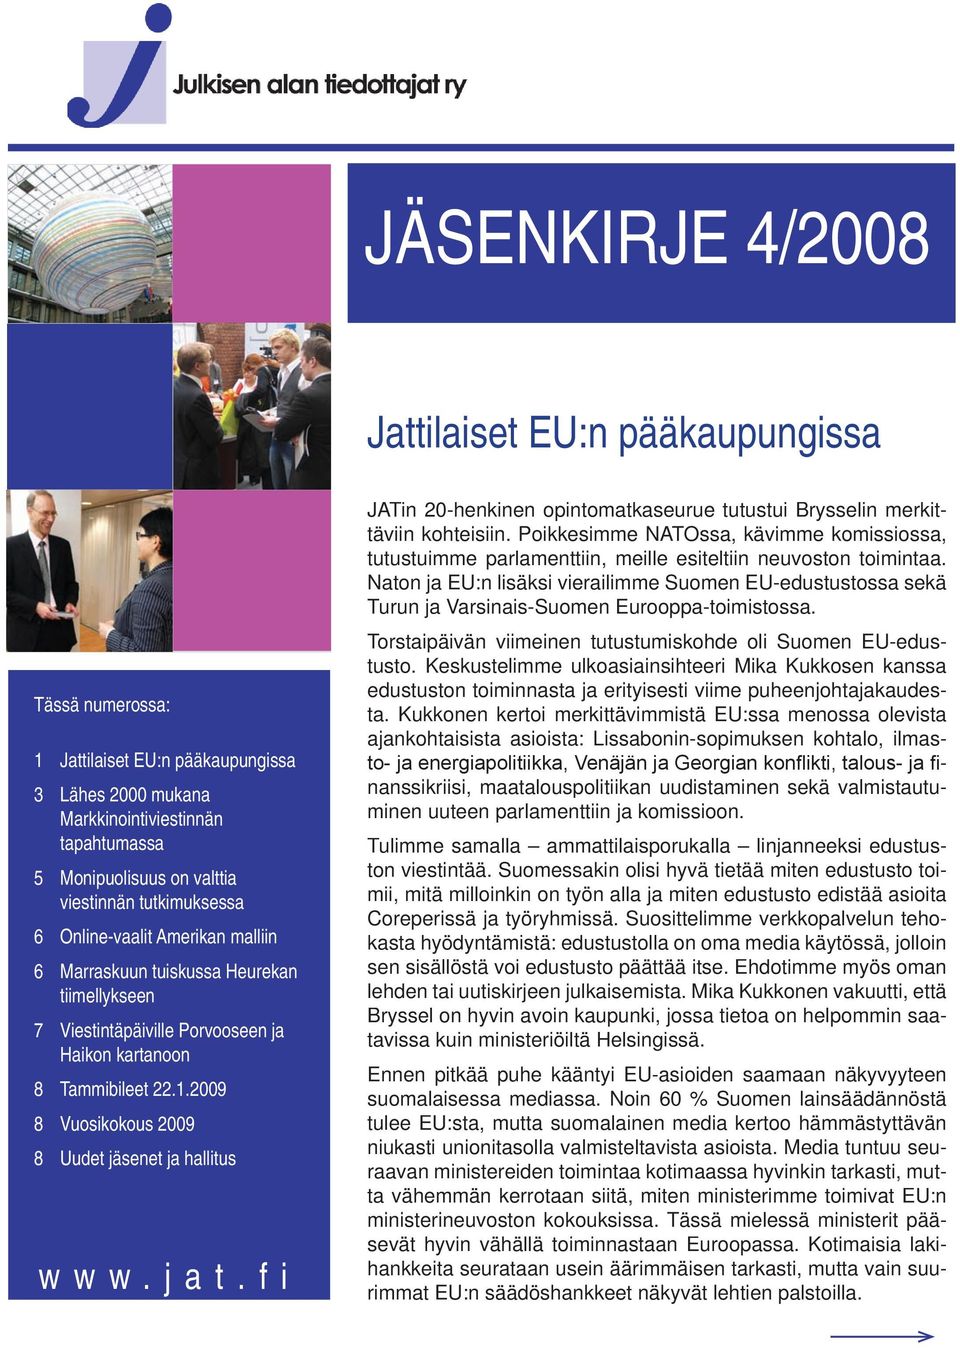 2009 8 Vuosikokous 2009 8 Uudet jäsenet ja hallitus www.jat.fi JATin 20-henkinen opintomatkaseurue tutustui Brysselin merkittäviin kohteisiin.